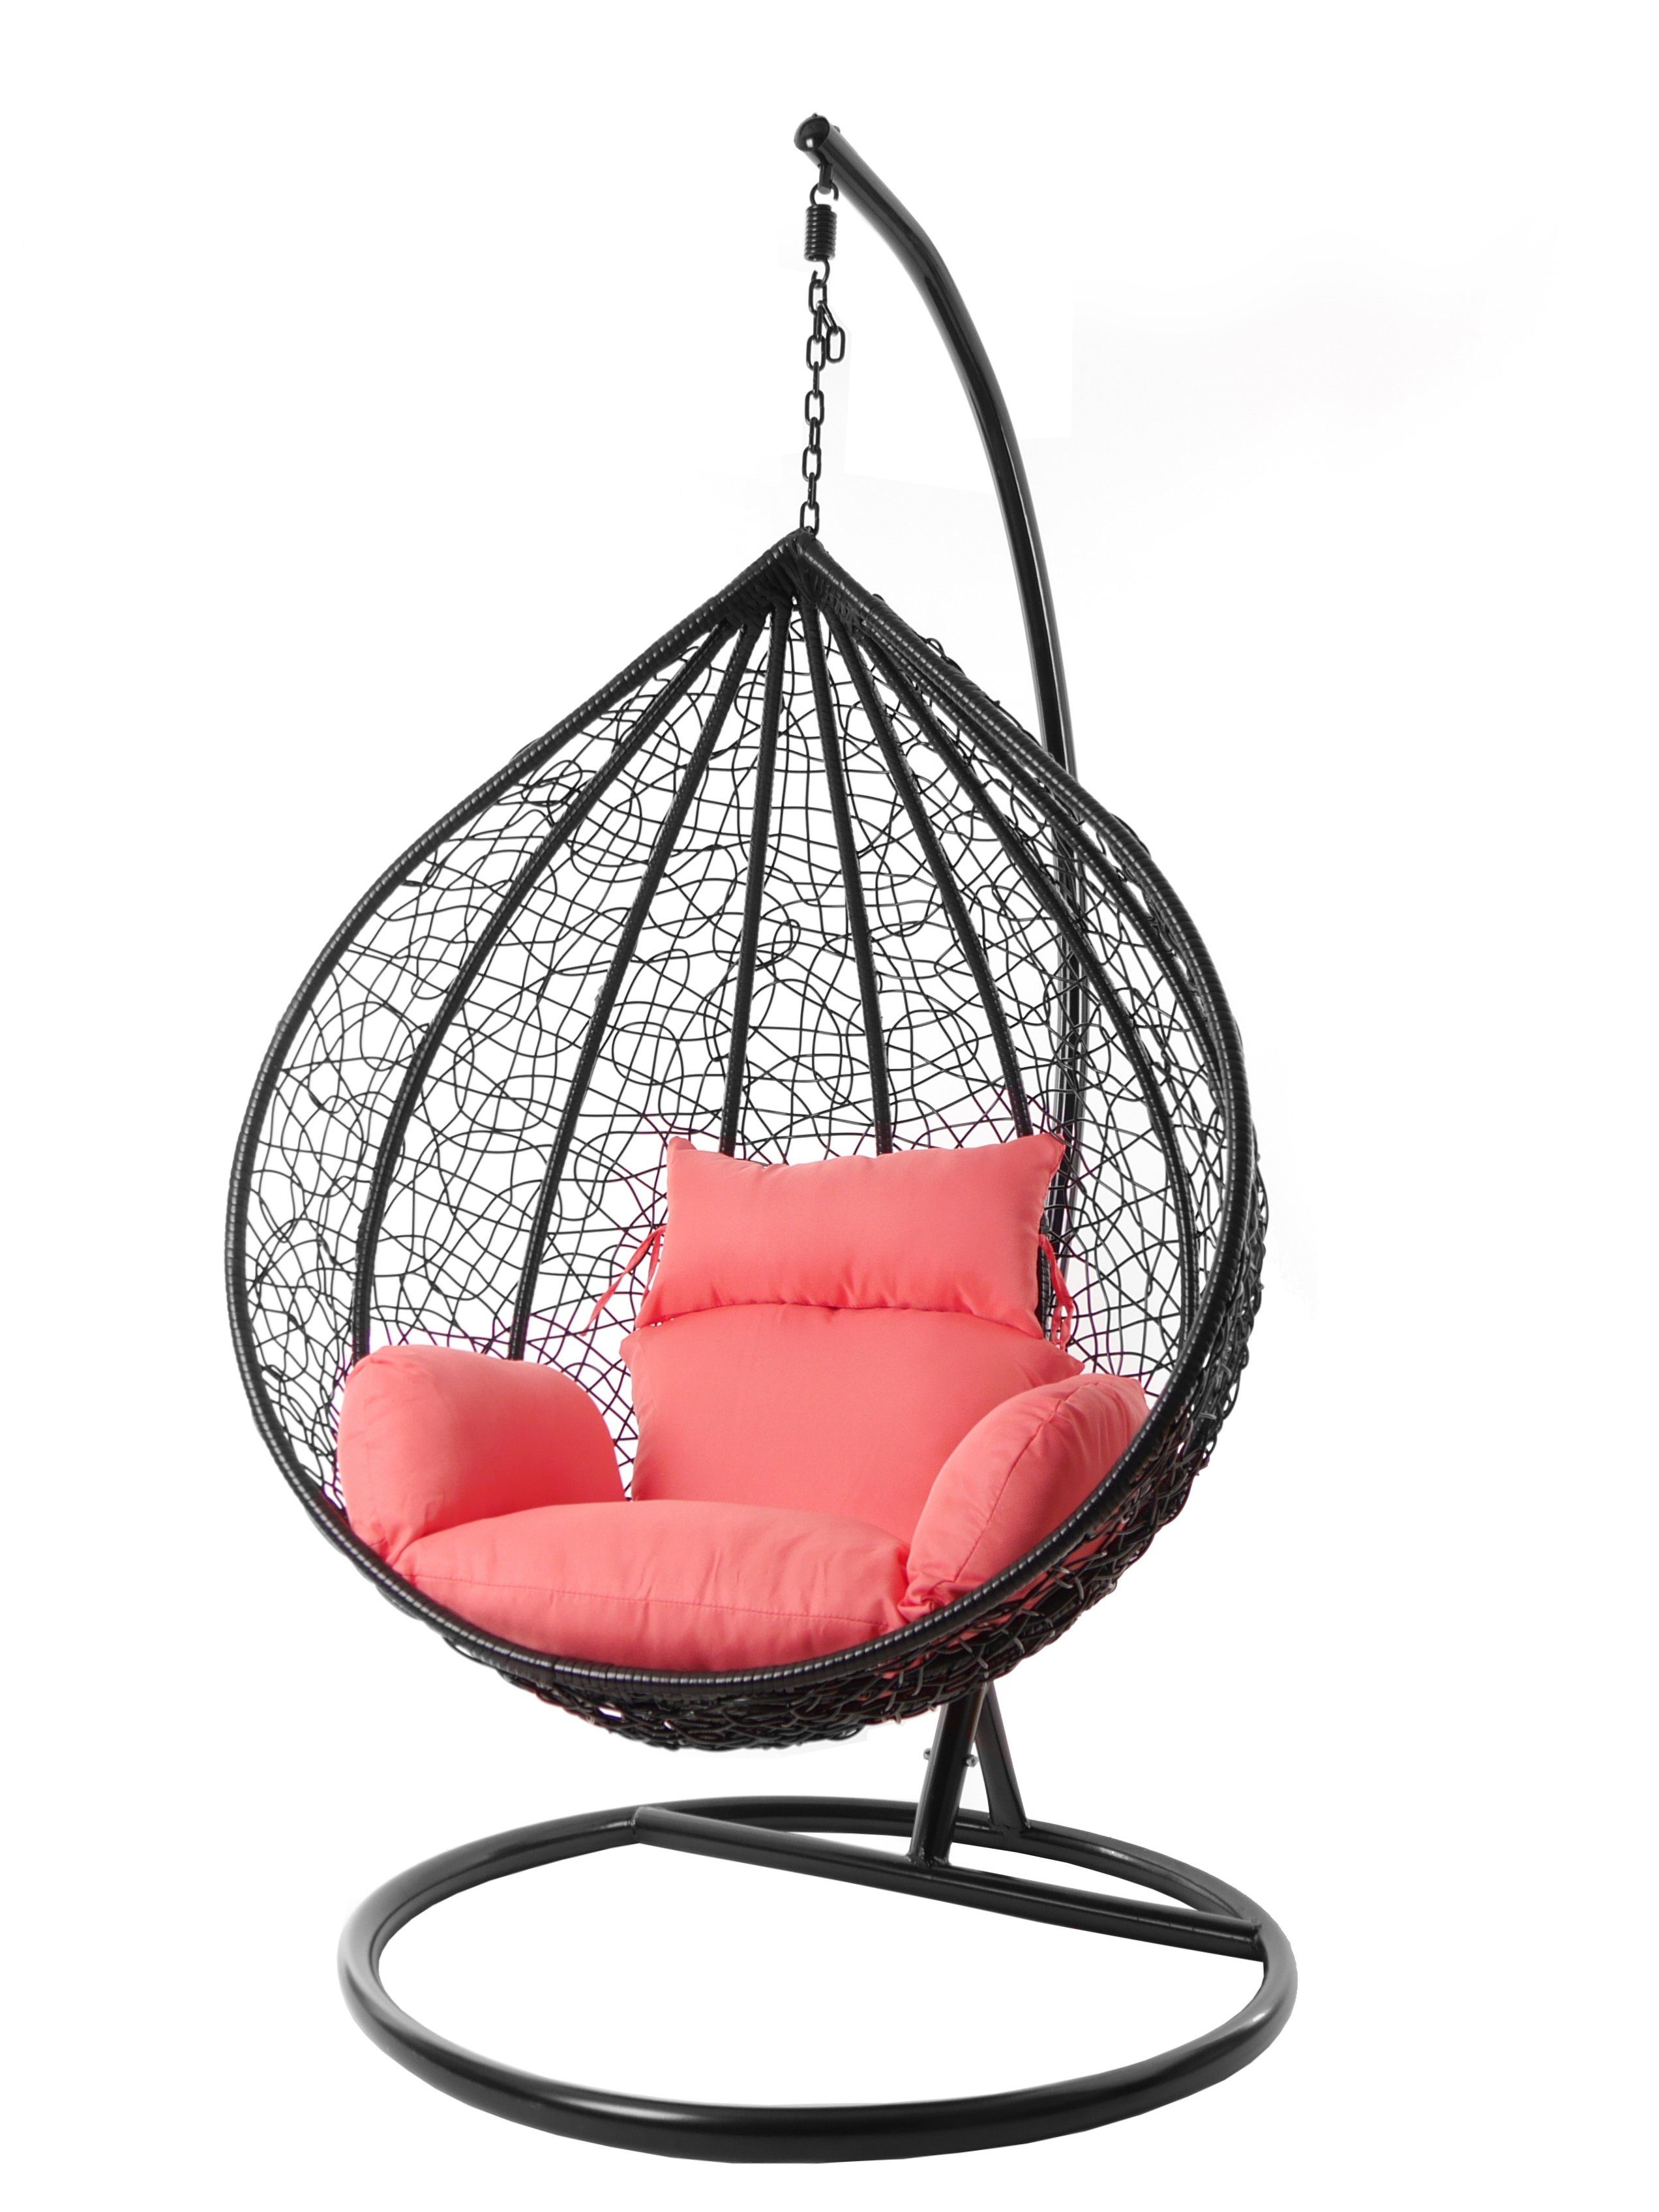 Farben Chair, Gestell inklusive, edel, schwarz, Hängesessel coral) Nest-Kissen, und Hängesessel XXL coral Kissen (3400 verschiedene KIDEO Swing MANACOR